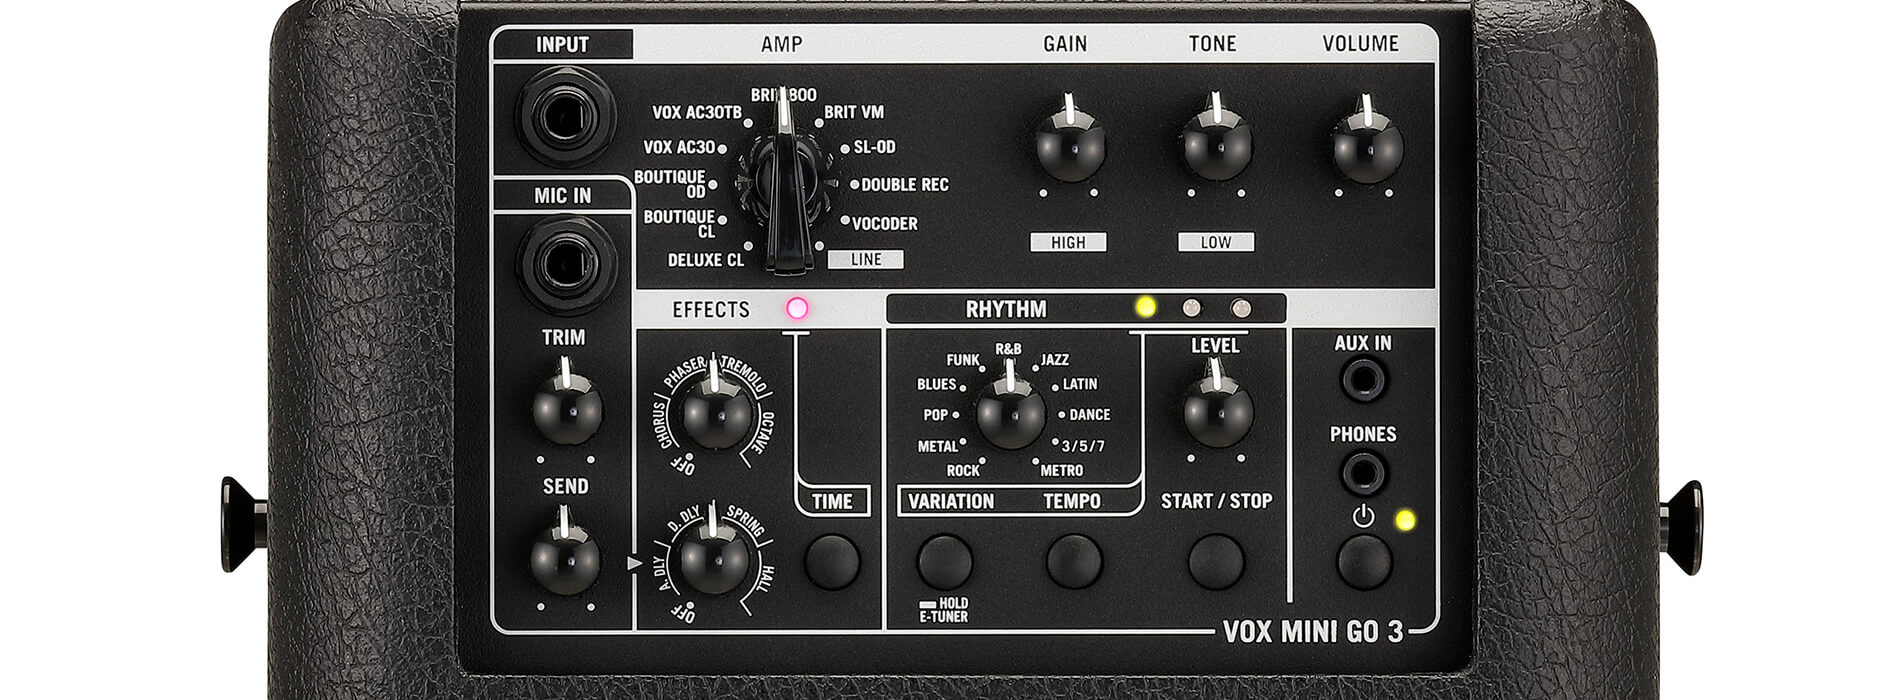 VOX MINI GO 3 - Vox Amps